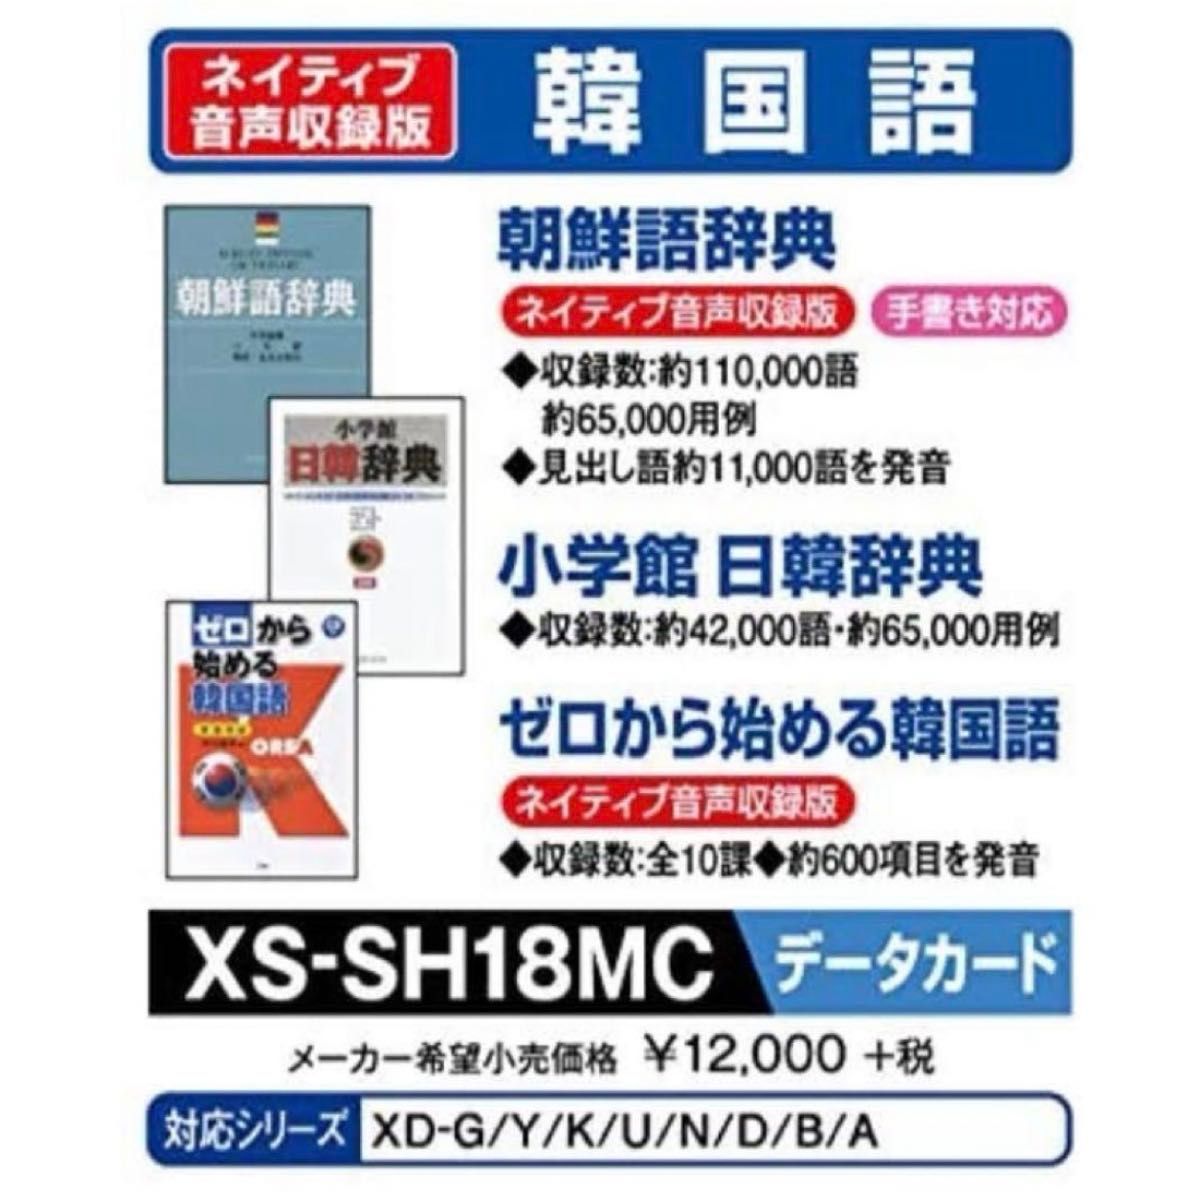 CASIO 追加コンテンツ 韓国語 データカード microSD XS-SH18MC カシオ  エクスワード 電子辞書